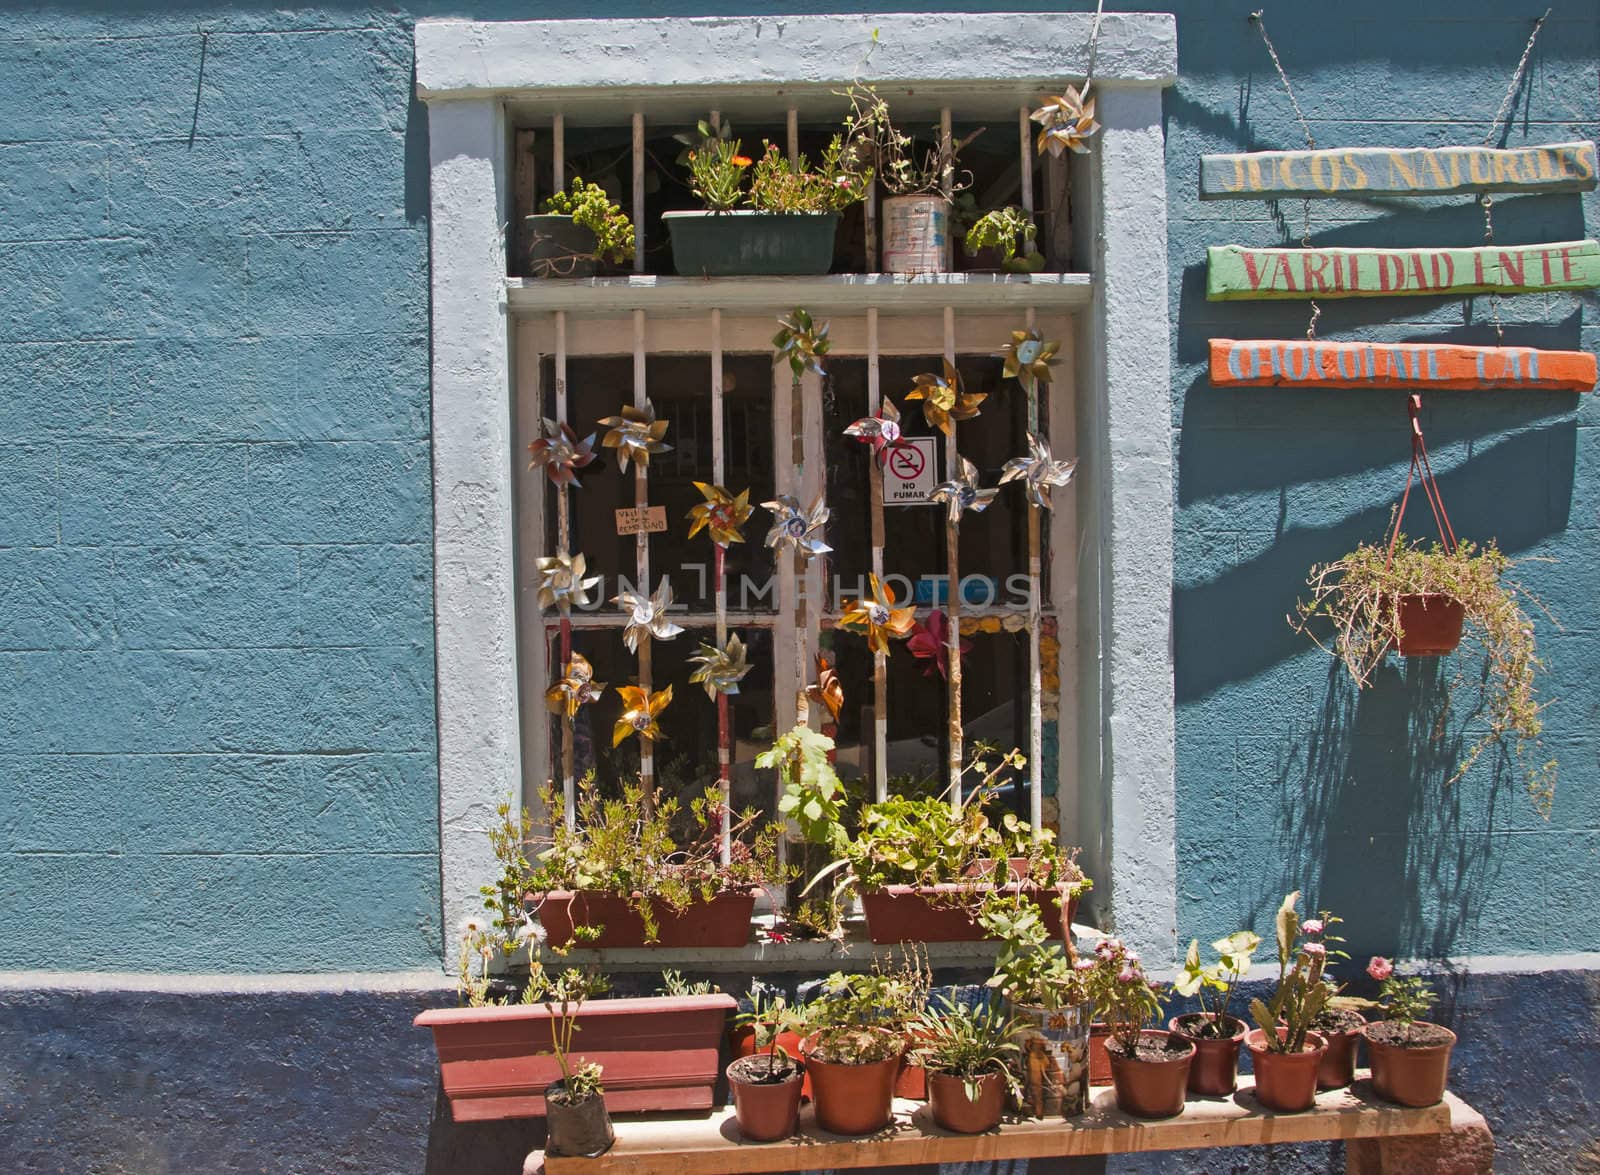 Cafe window in Valpariso, Chile